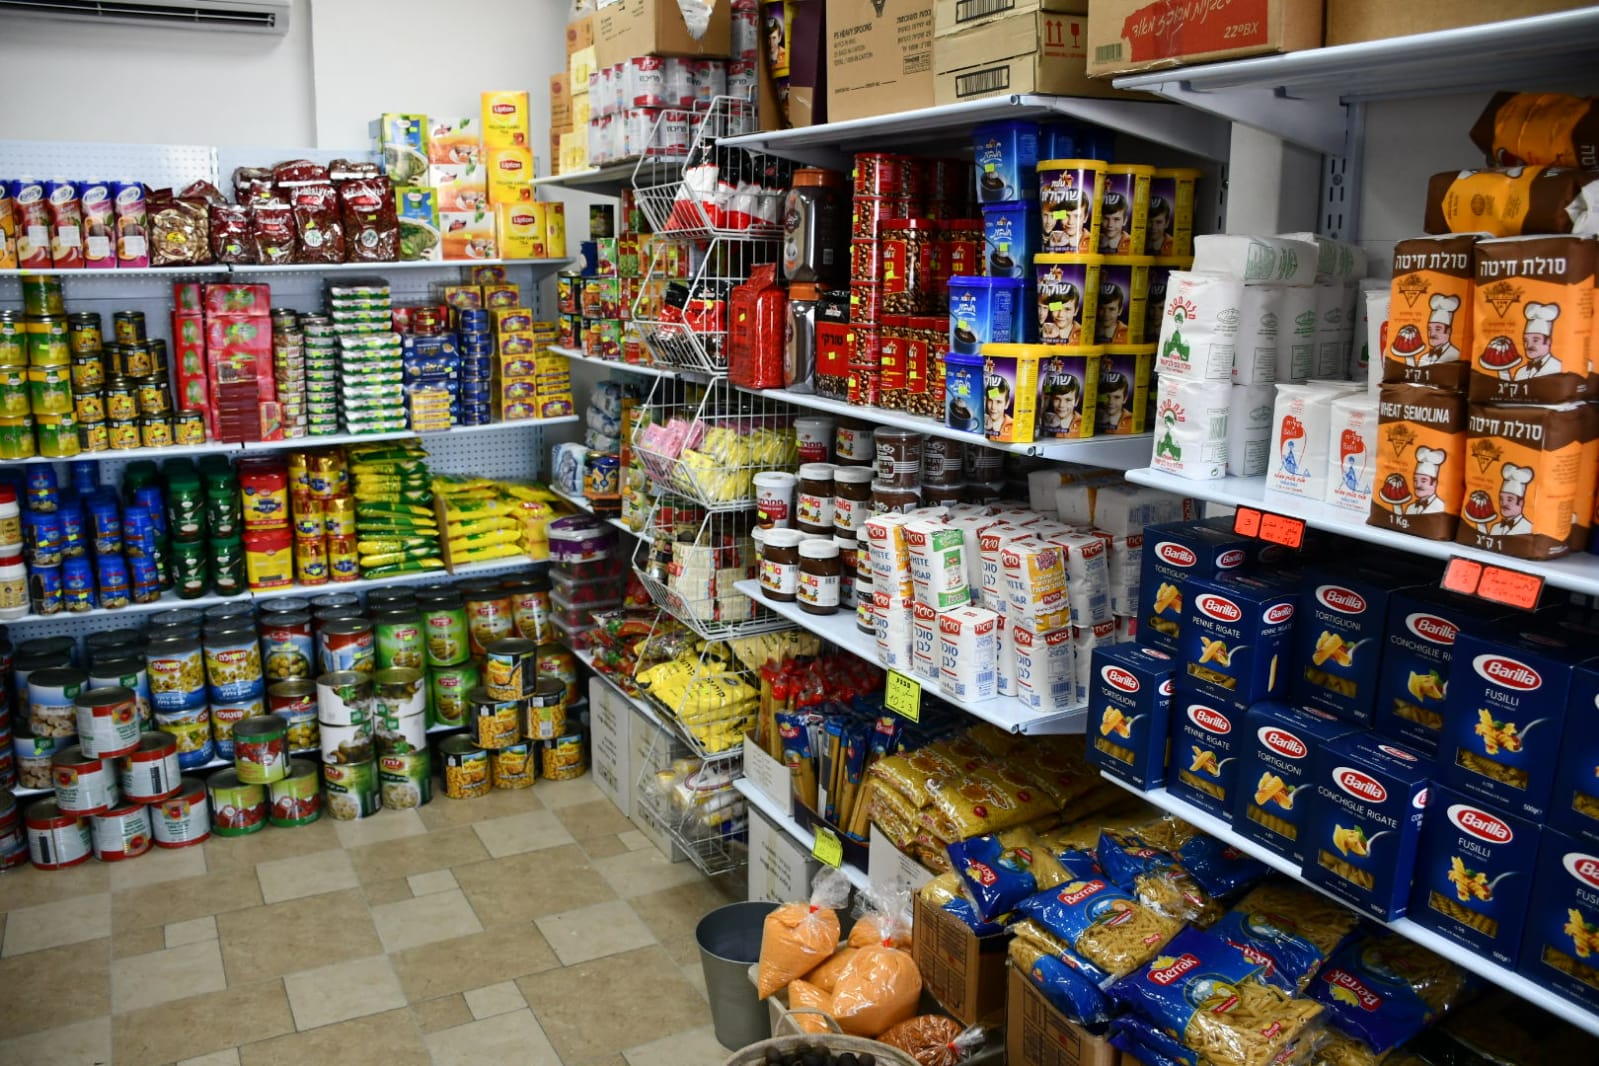  يافا: الزهراء للعطارة والمواد الغذائية تُعلن عن حملة تخفيضات على الأسعار